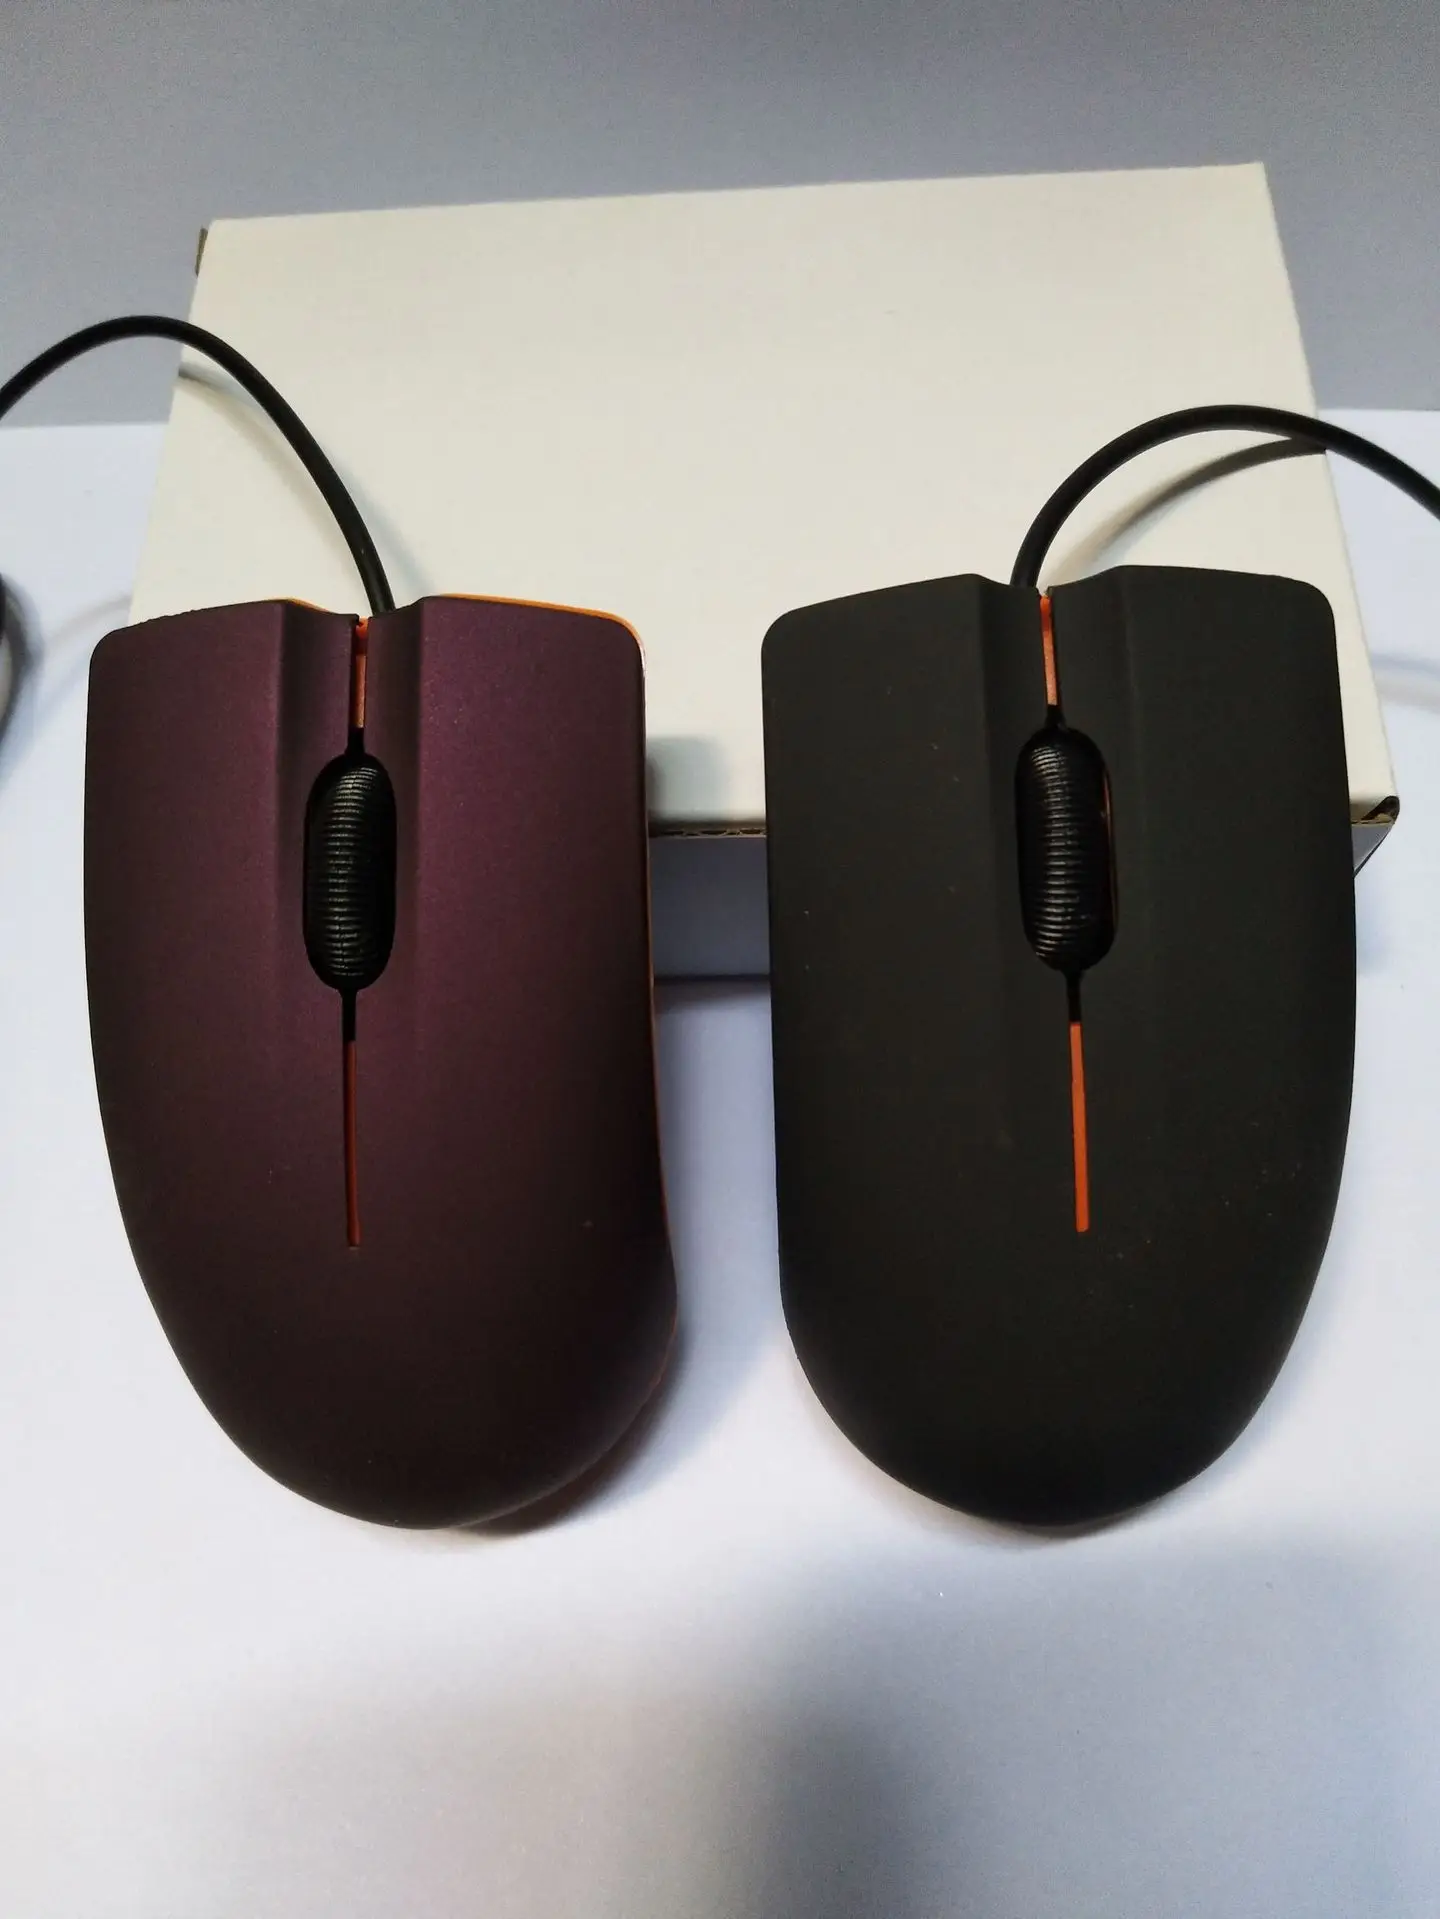 Мышь M20 мышь кабель ноутбук мини мышь настольный компьютер игра USB мышь